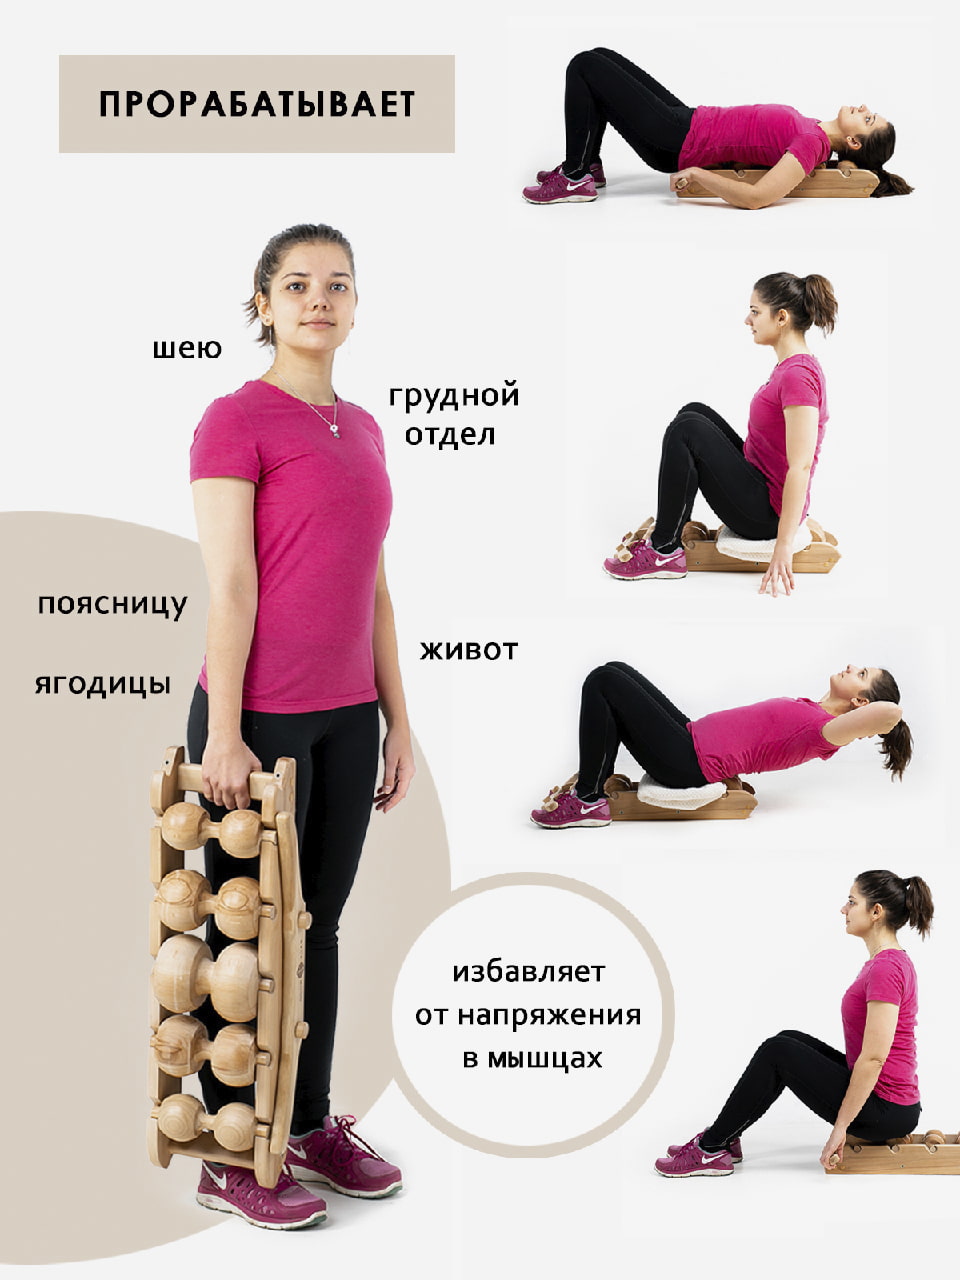 Упражнения и лечебная гимнастика при остеохондрозе (ЛФК).